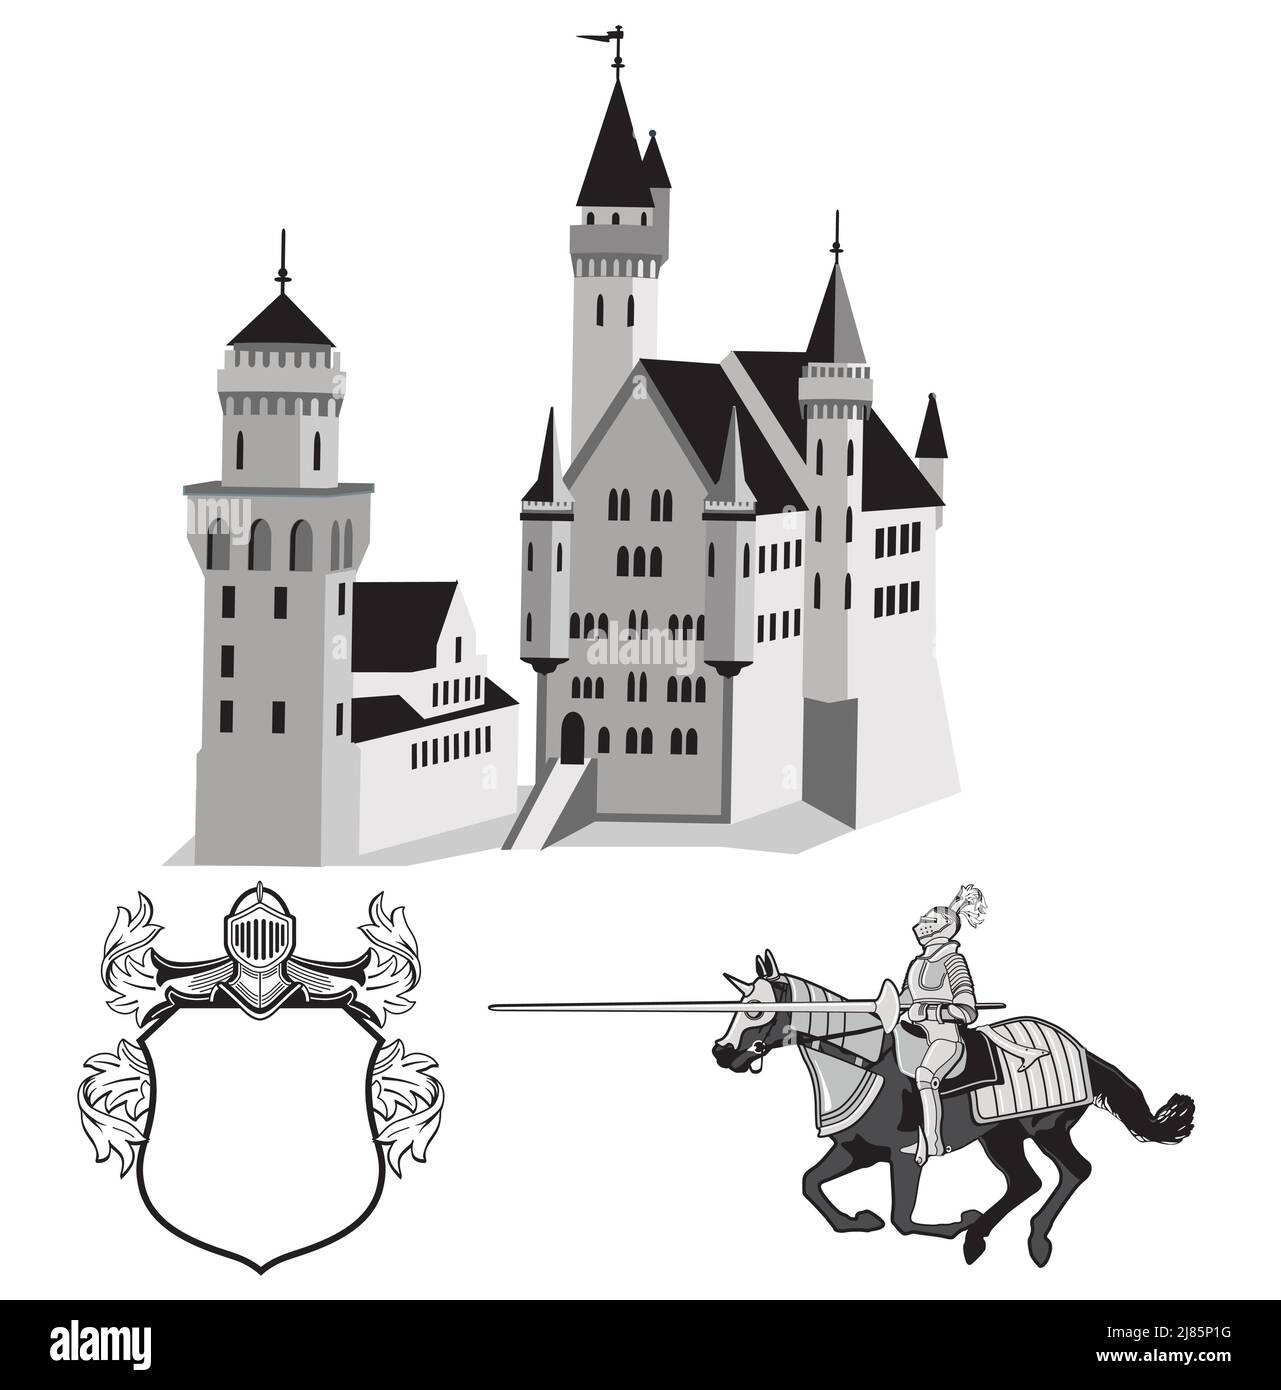 Le château de Knight avec une illustration de chevalier et de blason Illustration de Vecteur